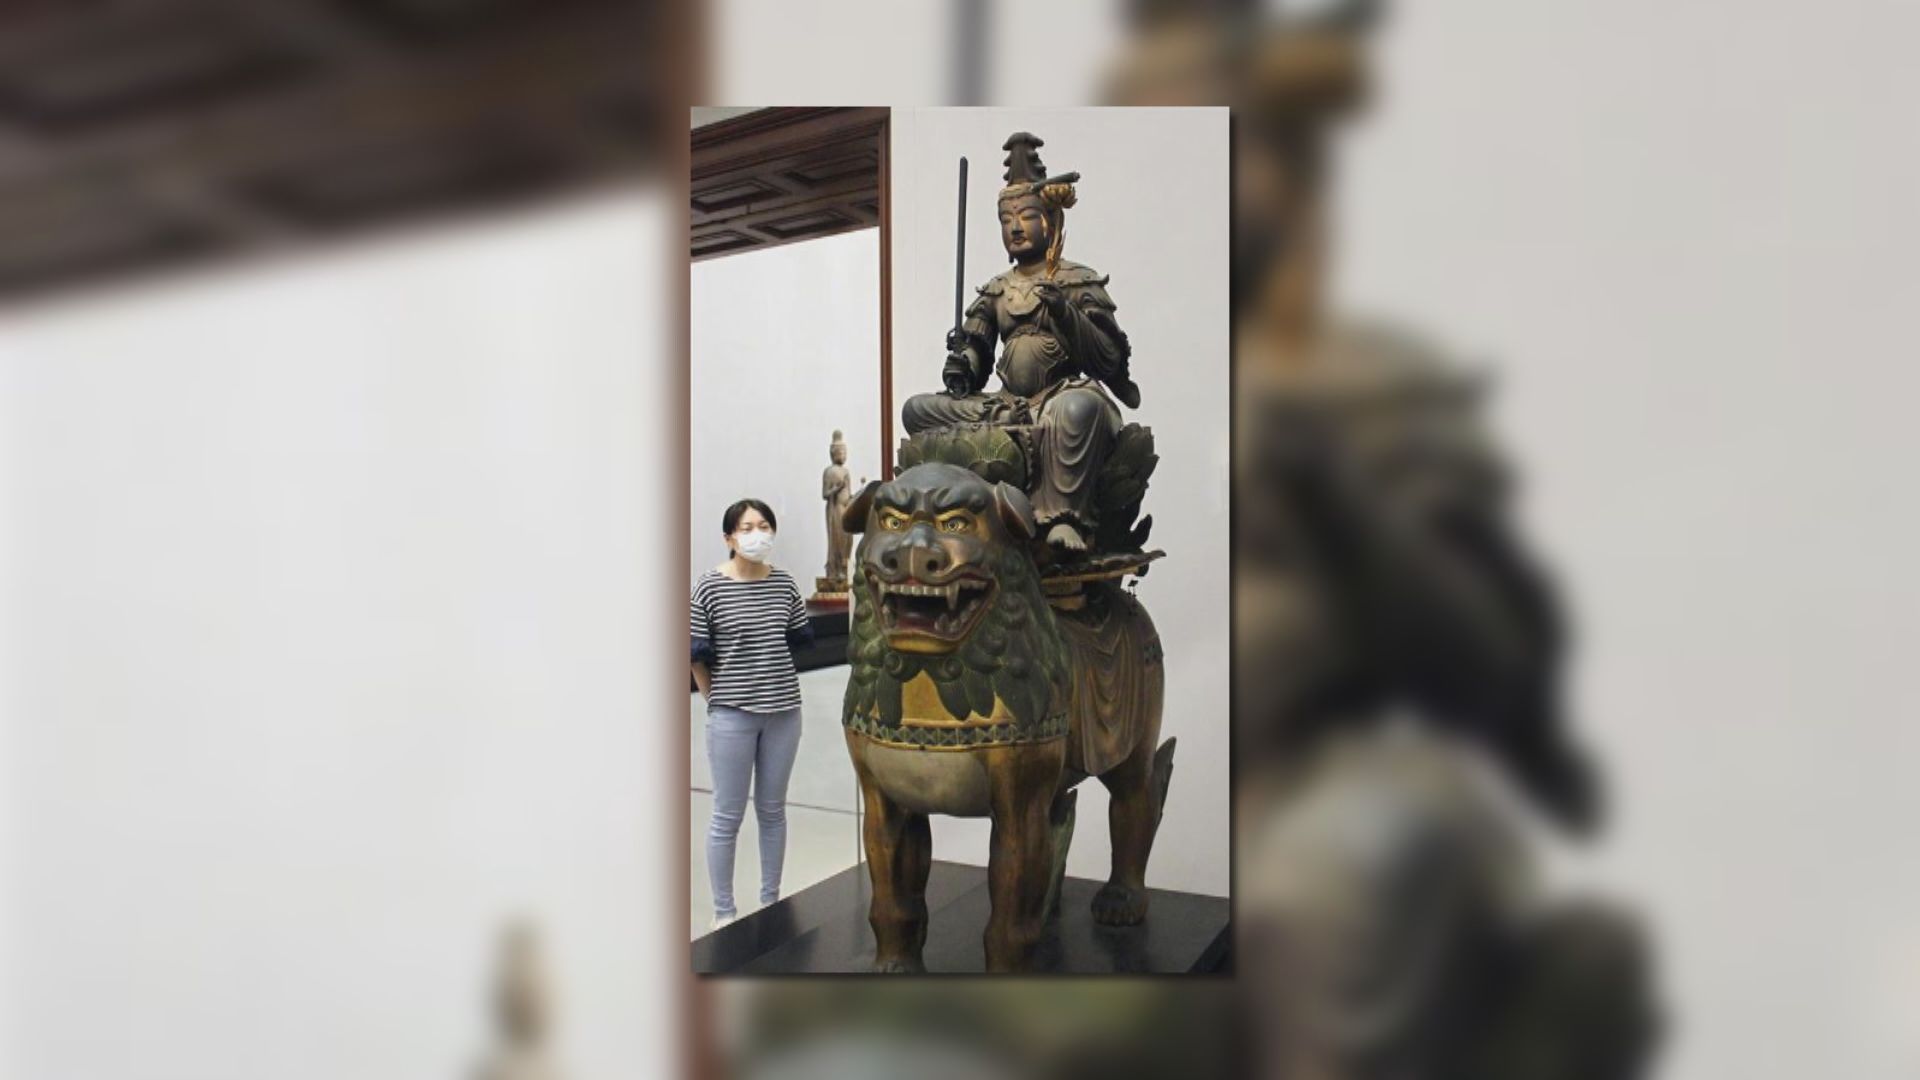 【環球薈報】大智寺文殊菩薩像內發現藏小菩薩像